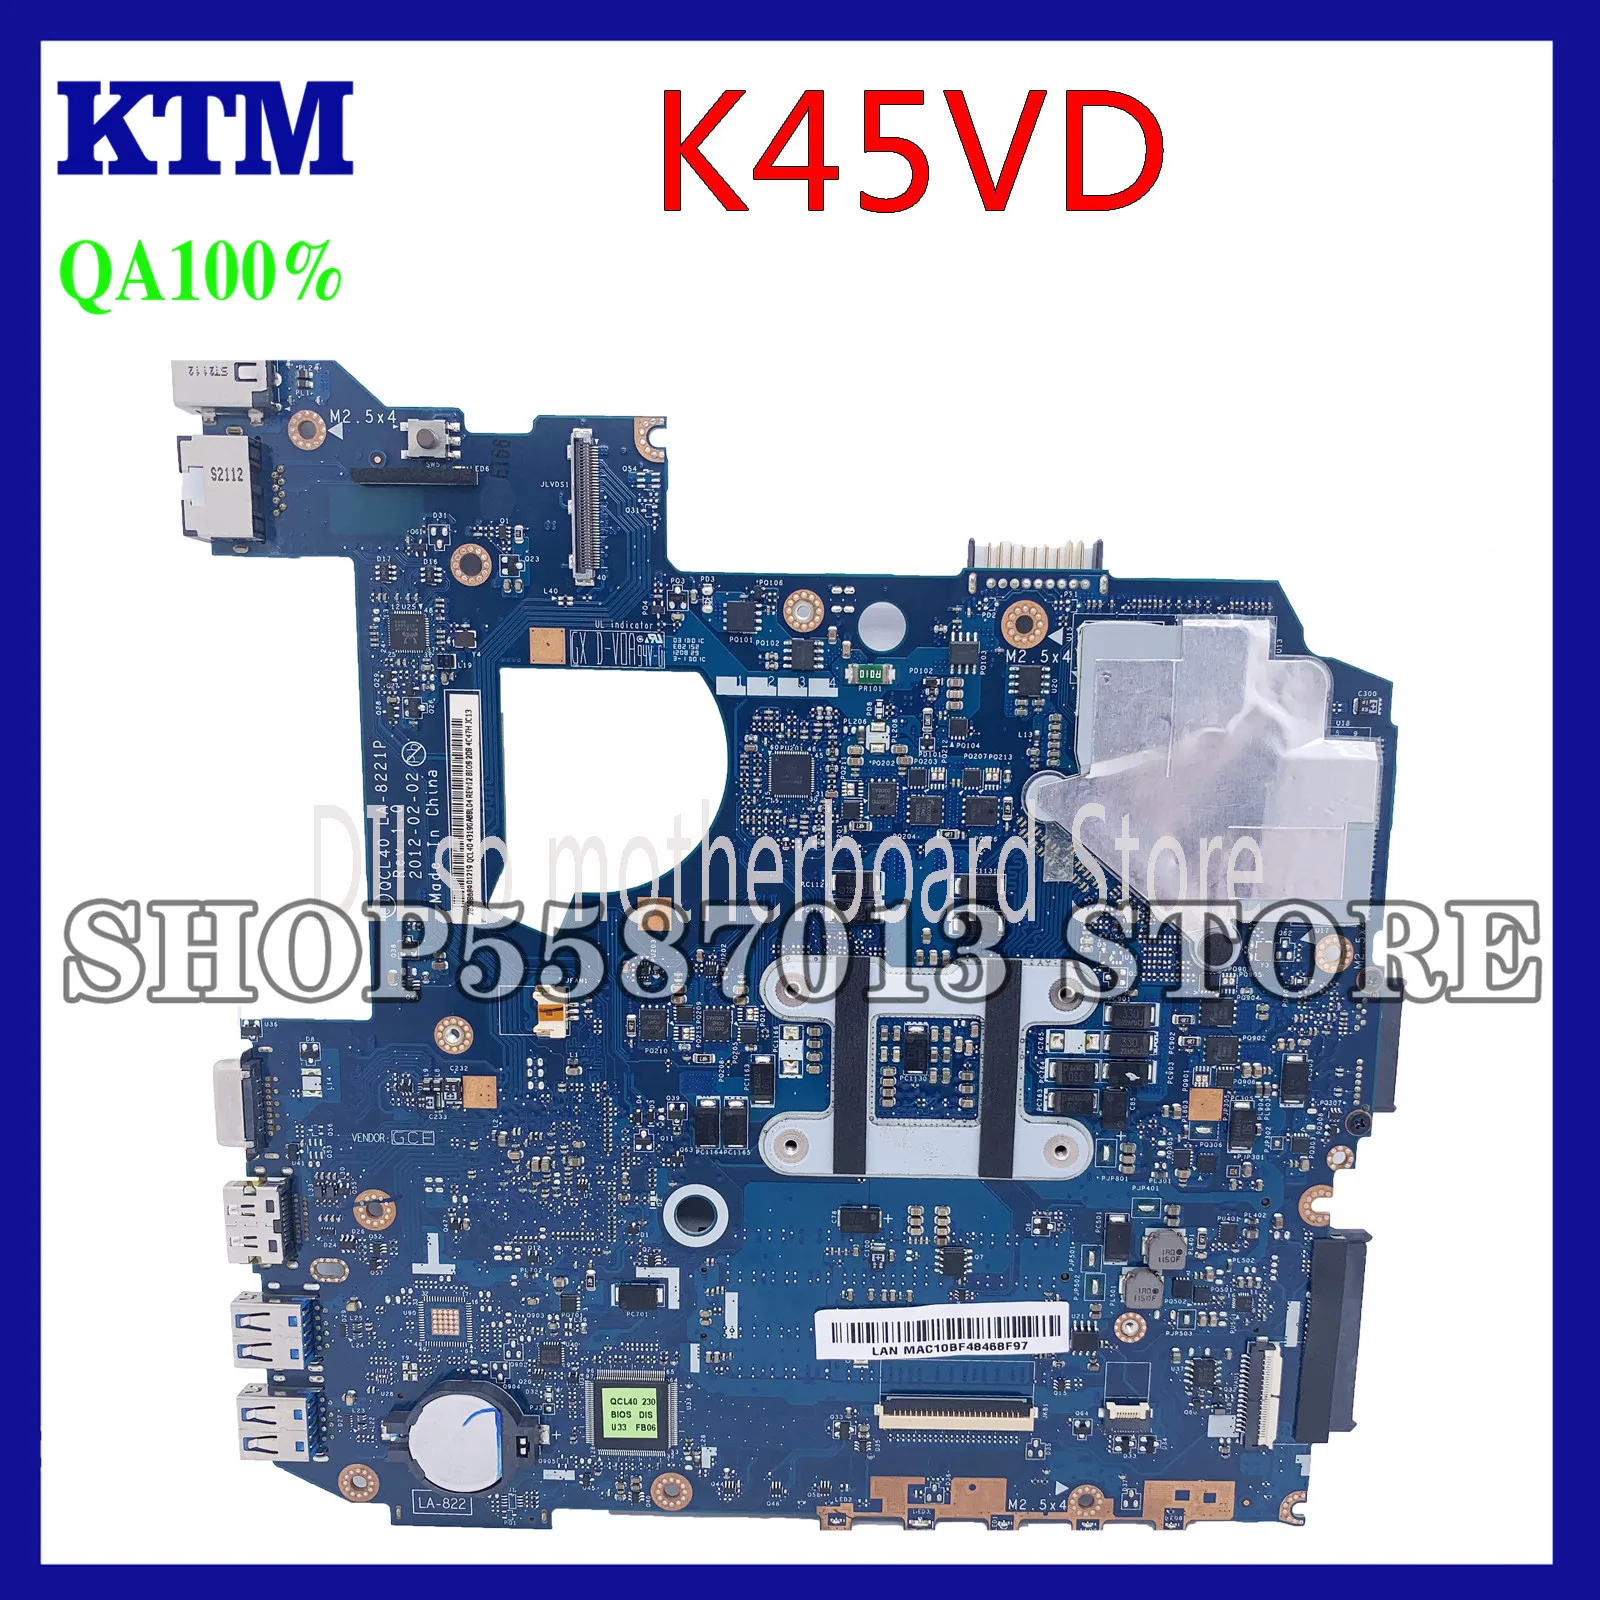 

KEFU LA-8221P For ASUS K45VJ K45VD A45V A85V K45VS K45VM Motherboard LA-8221P GT630M/610M/635M Motherboard Test